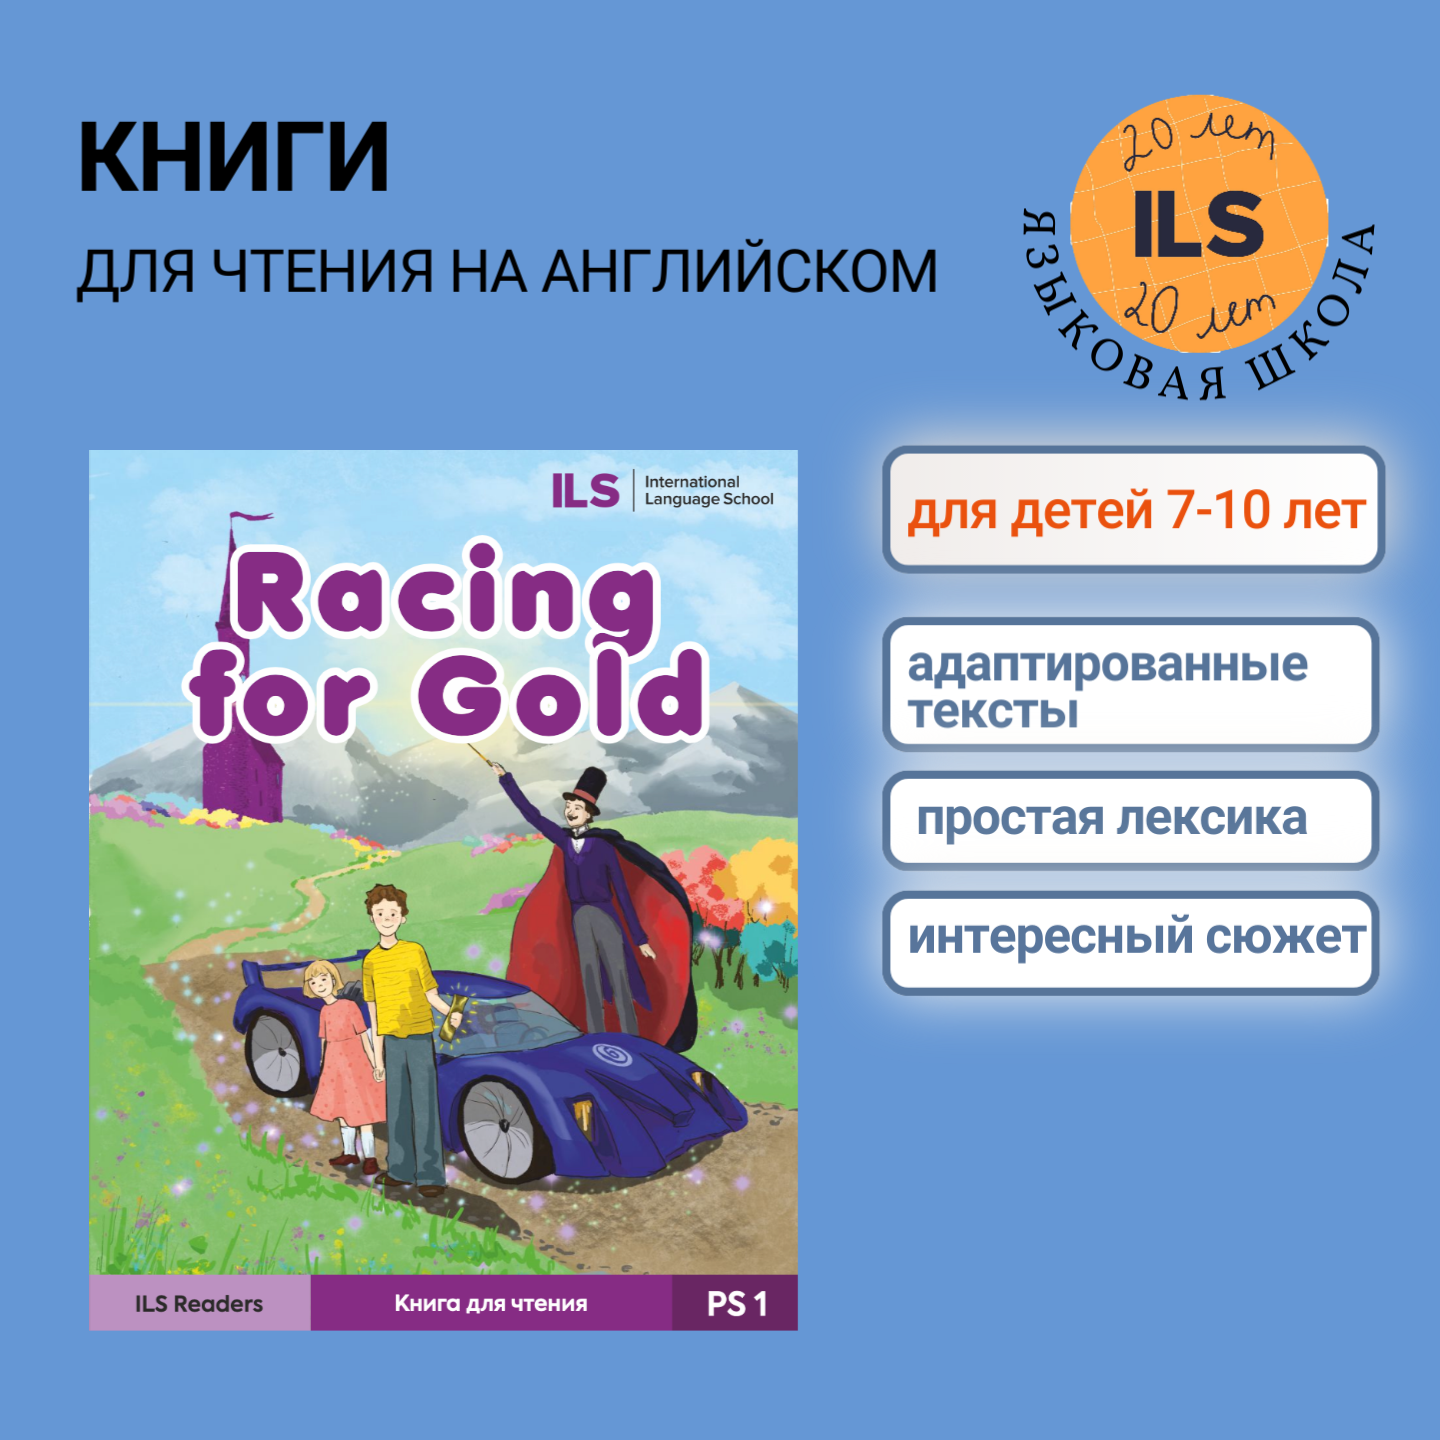 Книга для чтения на английском "Racing for Gold" для детей 1-5 классов